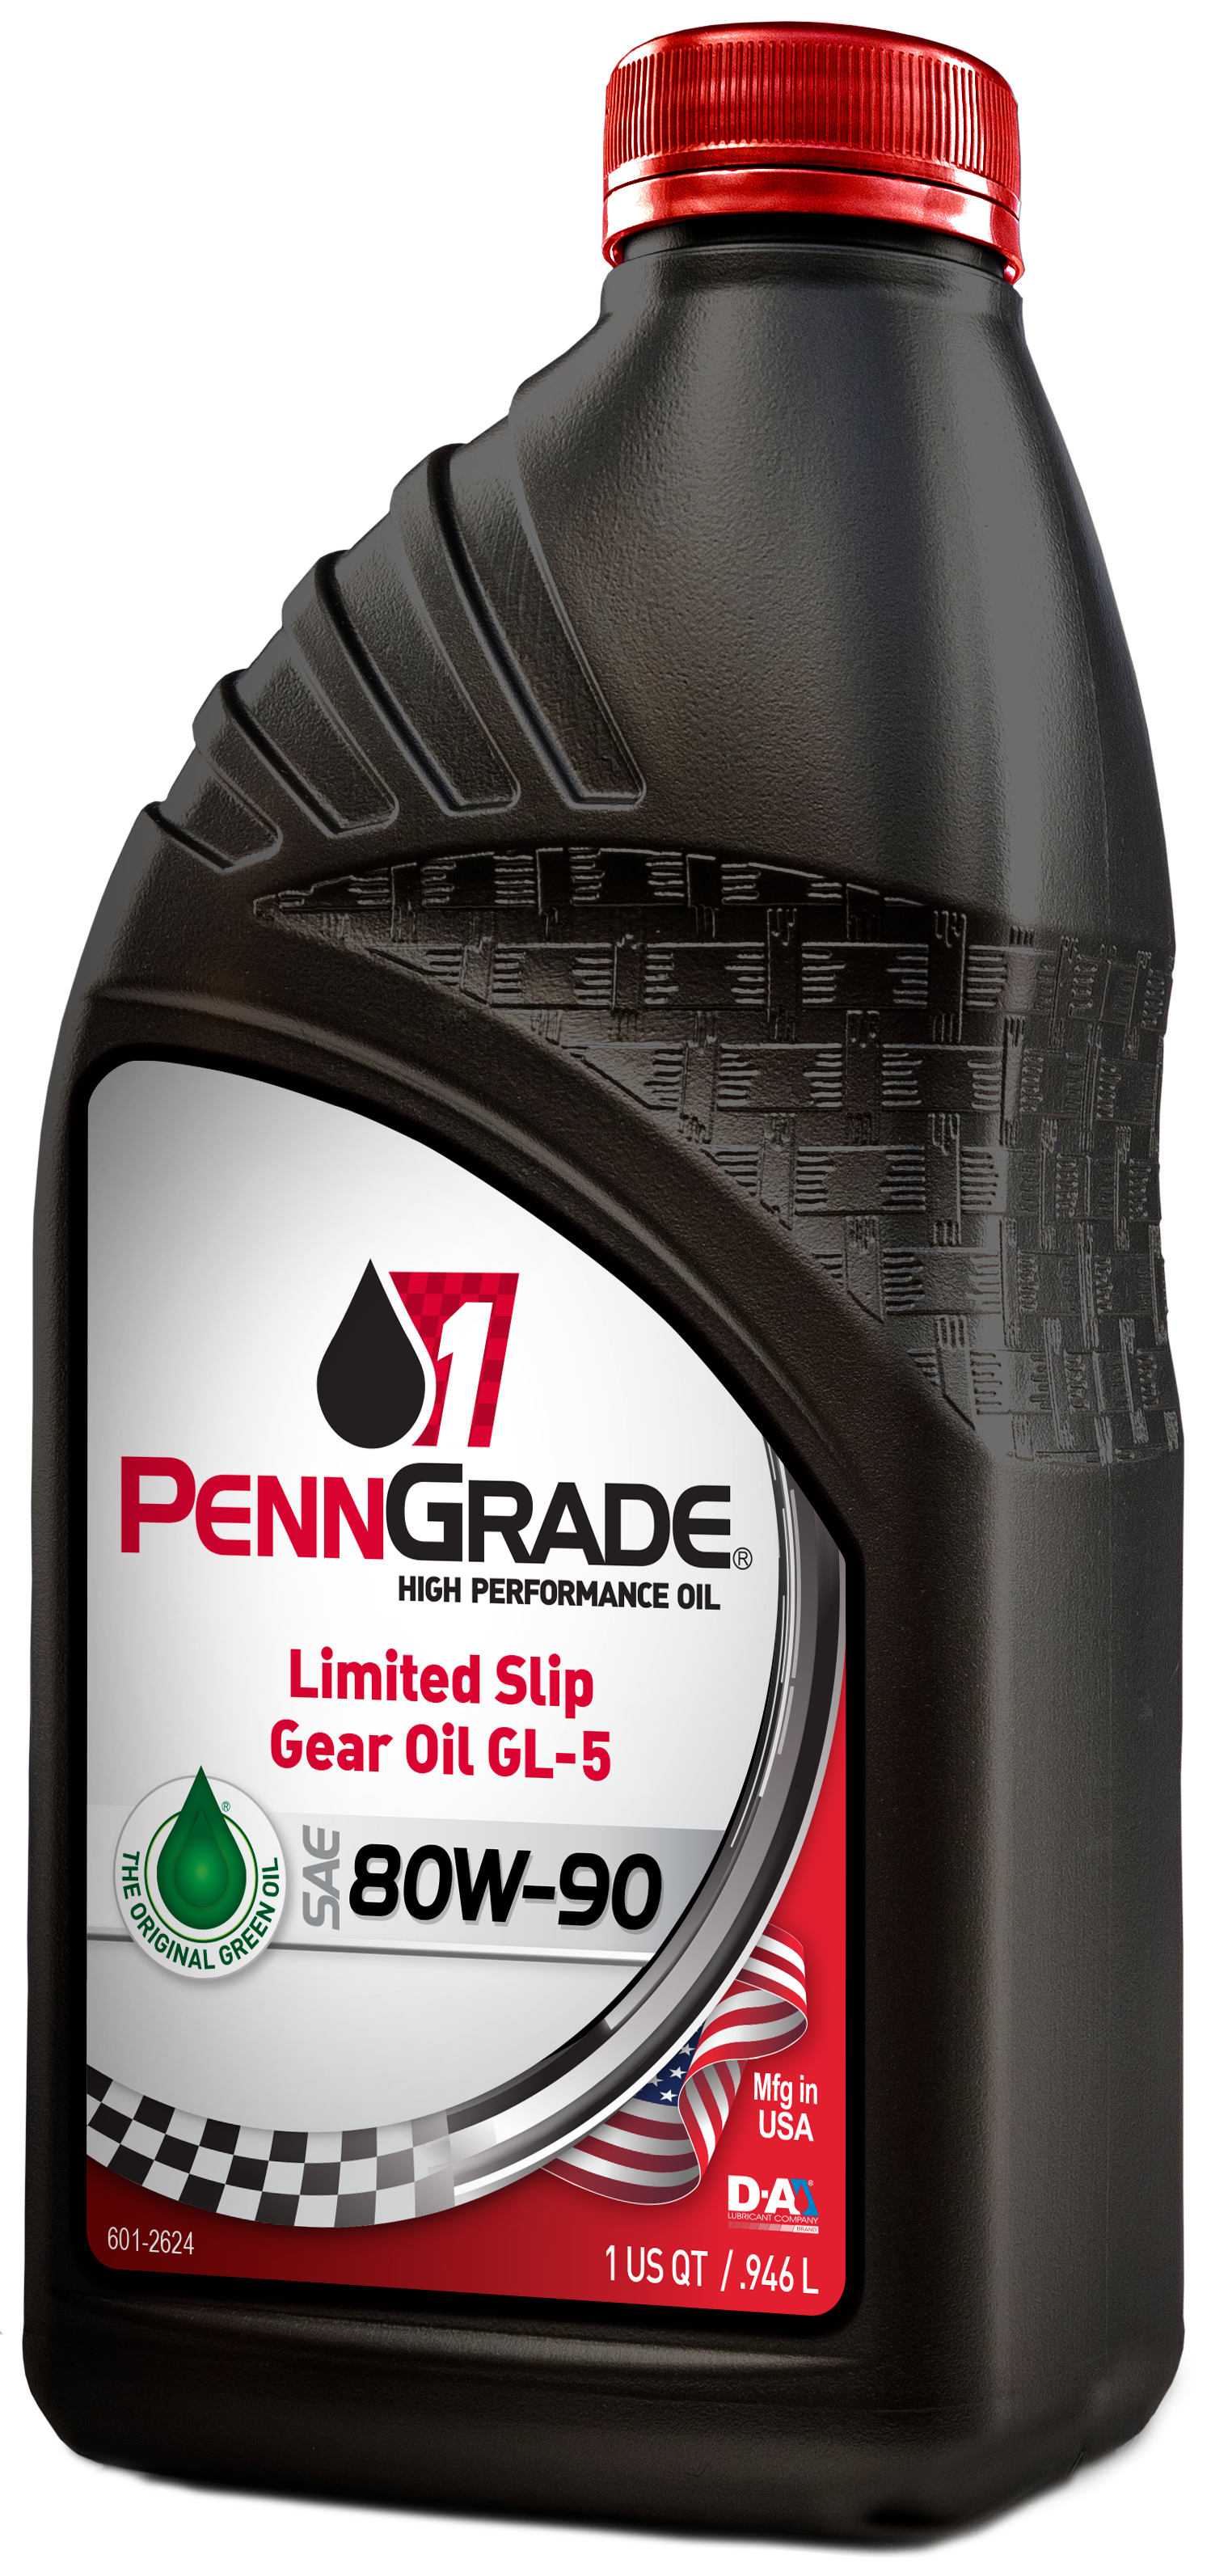 Limited Slip GL-5  Gear Oil 80-90 - 1 Case (12 Quarts) PennGrade